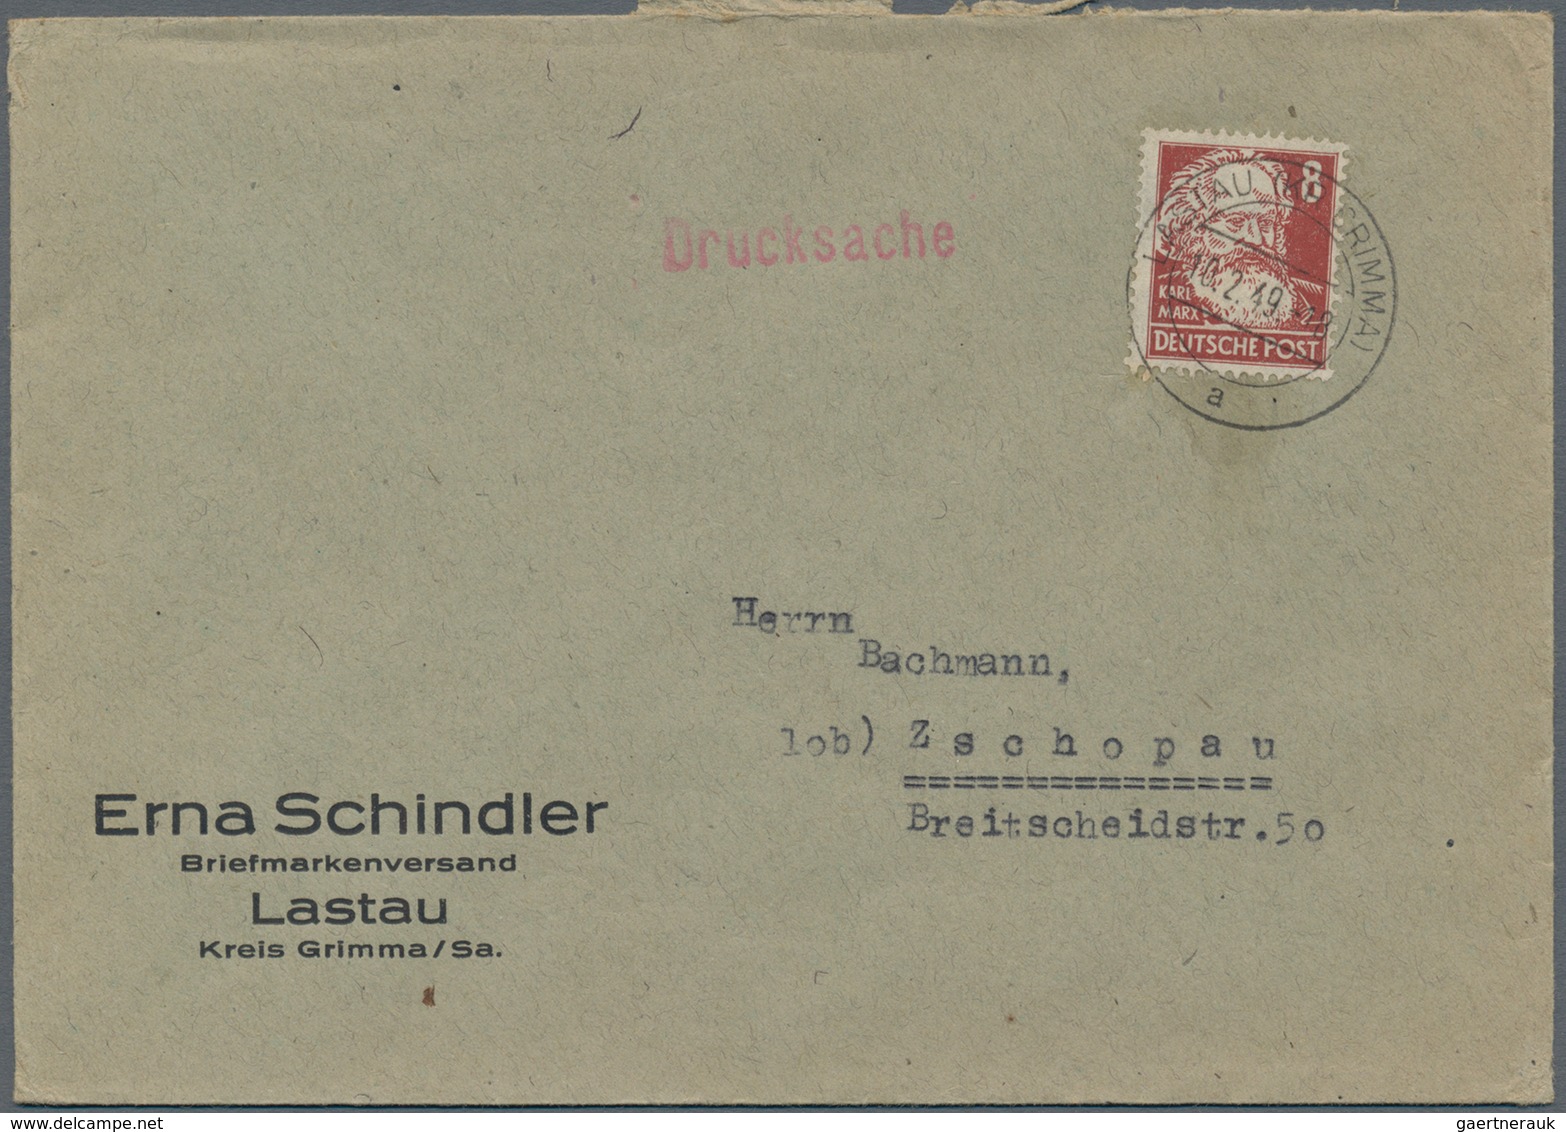 Sowjetische Zone - Allgemeine Ausgaben: 1949/1954, Partie von ca. 78 Briefen und Karten mit Frankatu